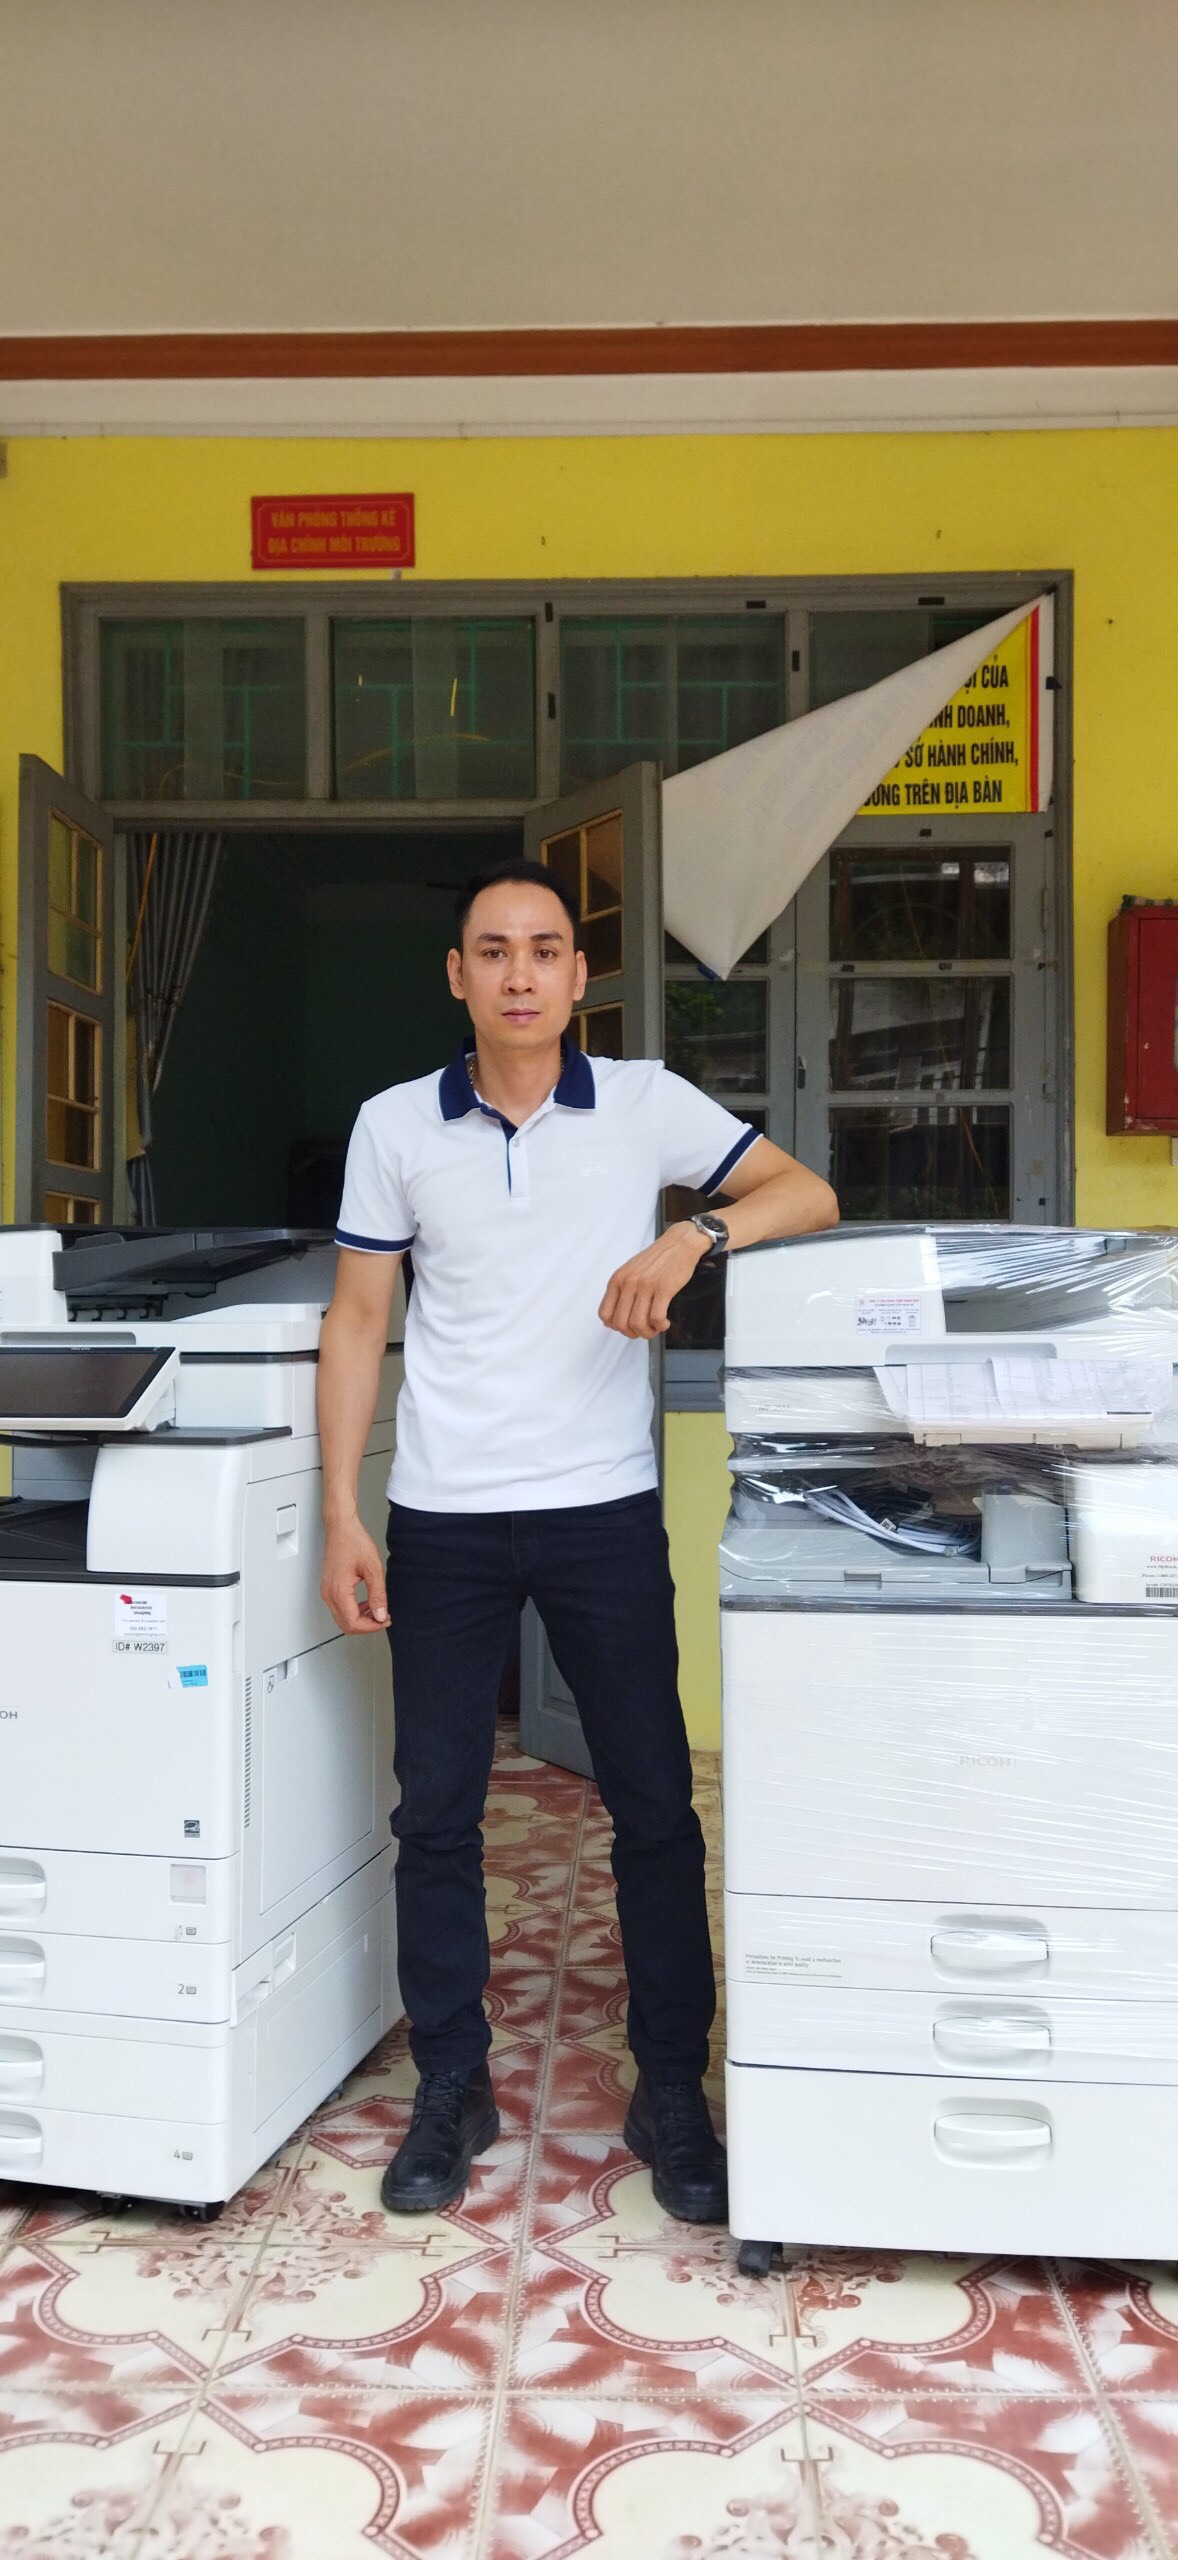 Bán và cho thuê máy photocopy giá rẻ tại Thanh Hóa, Nghệ An